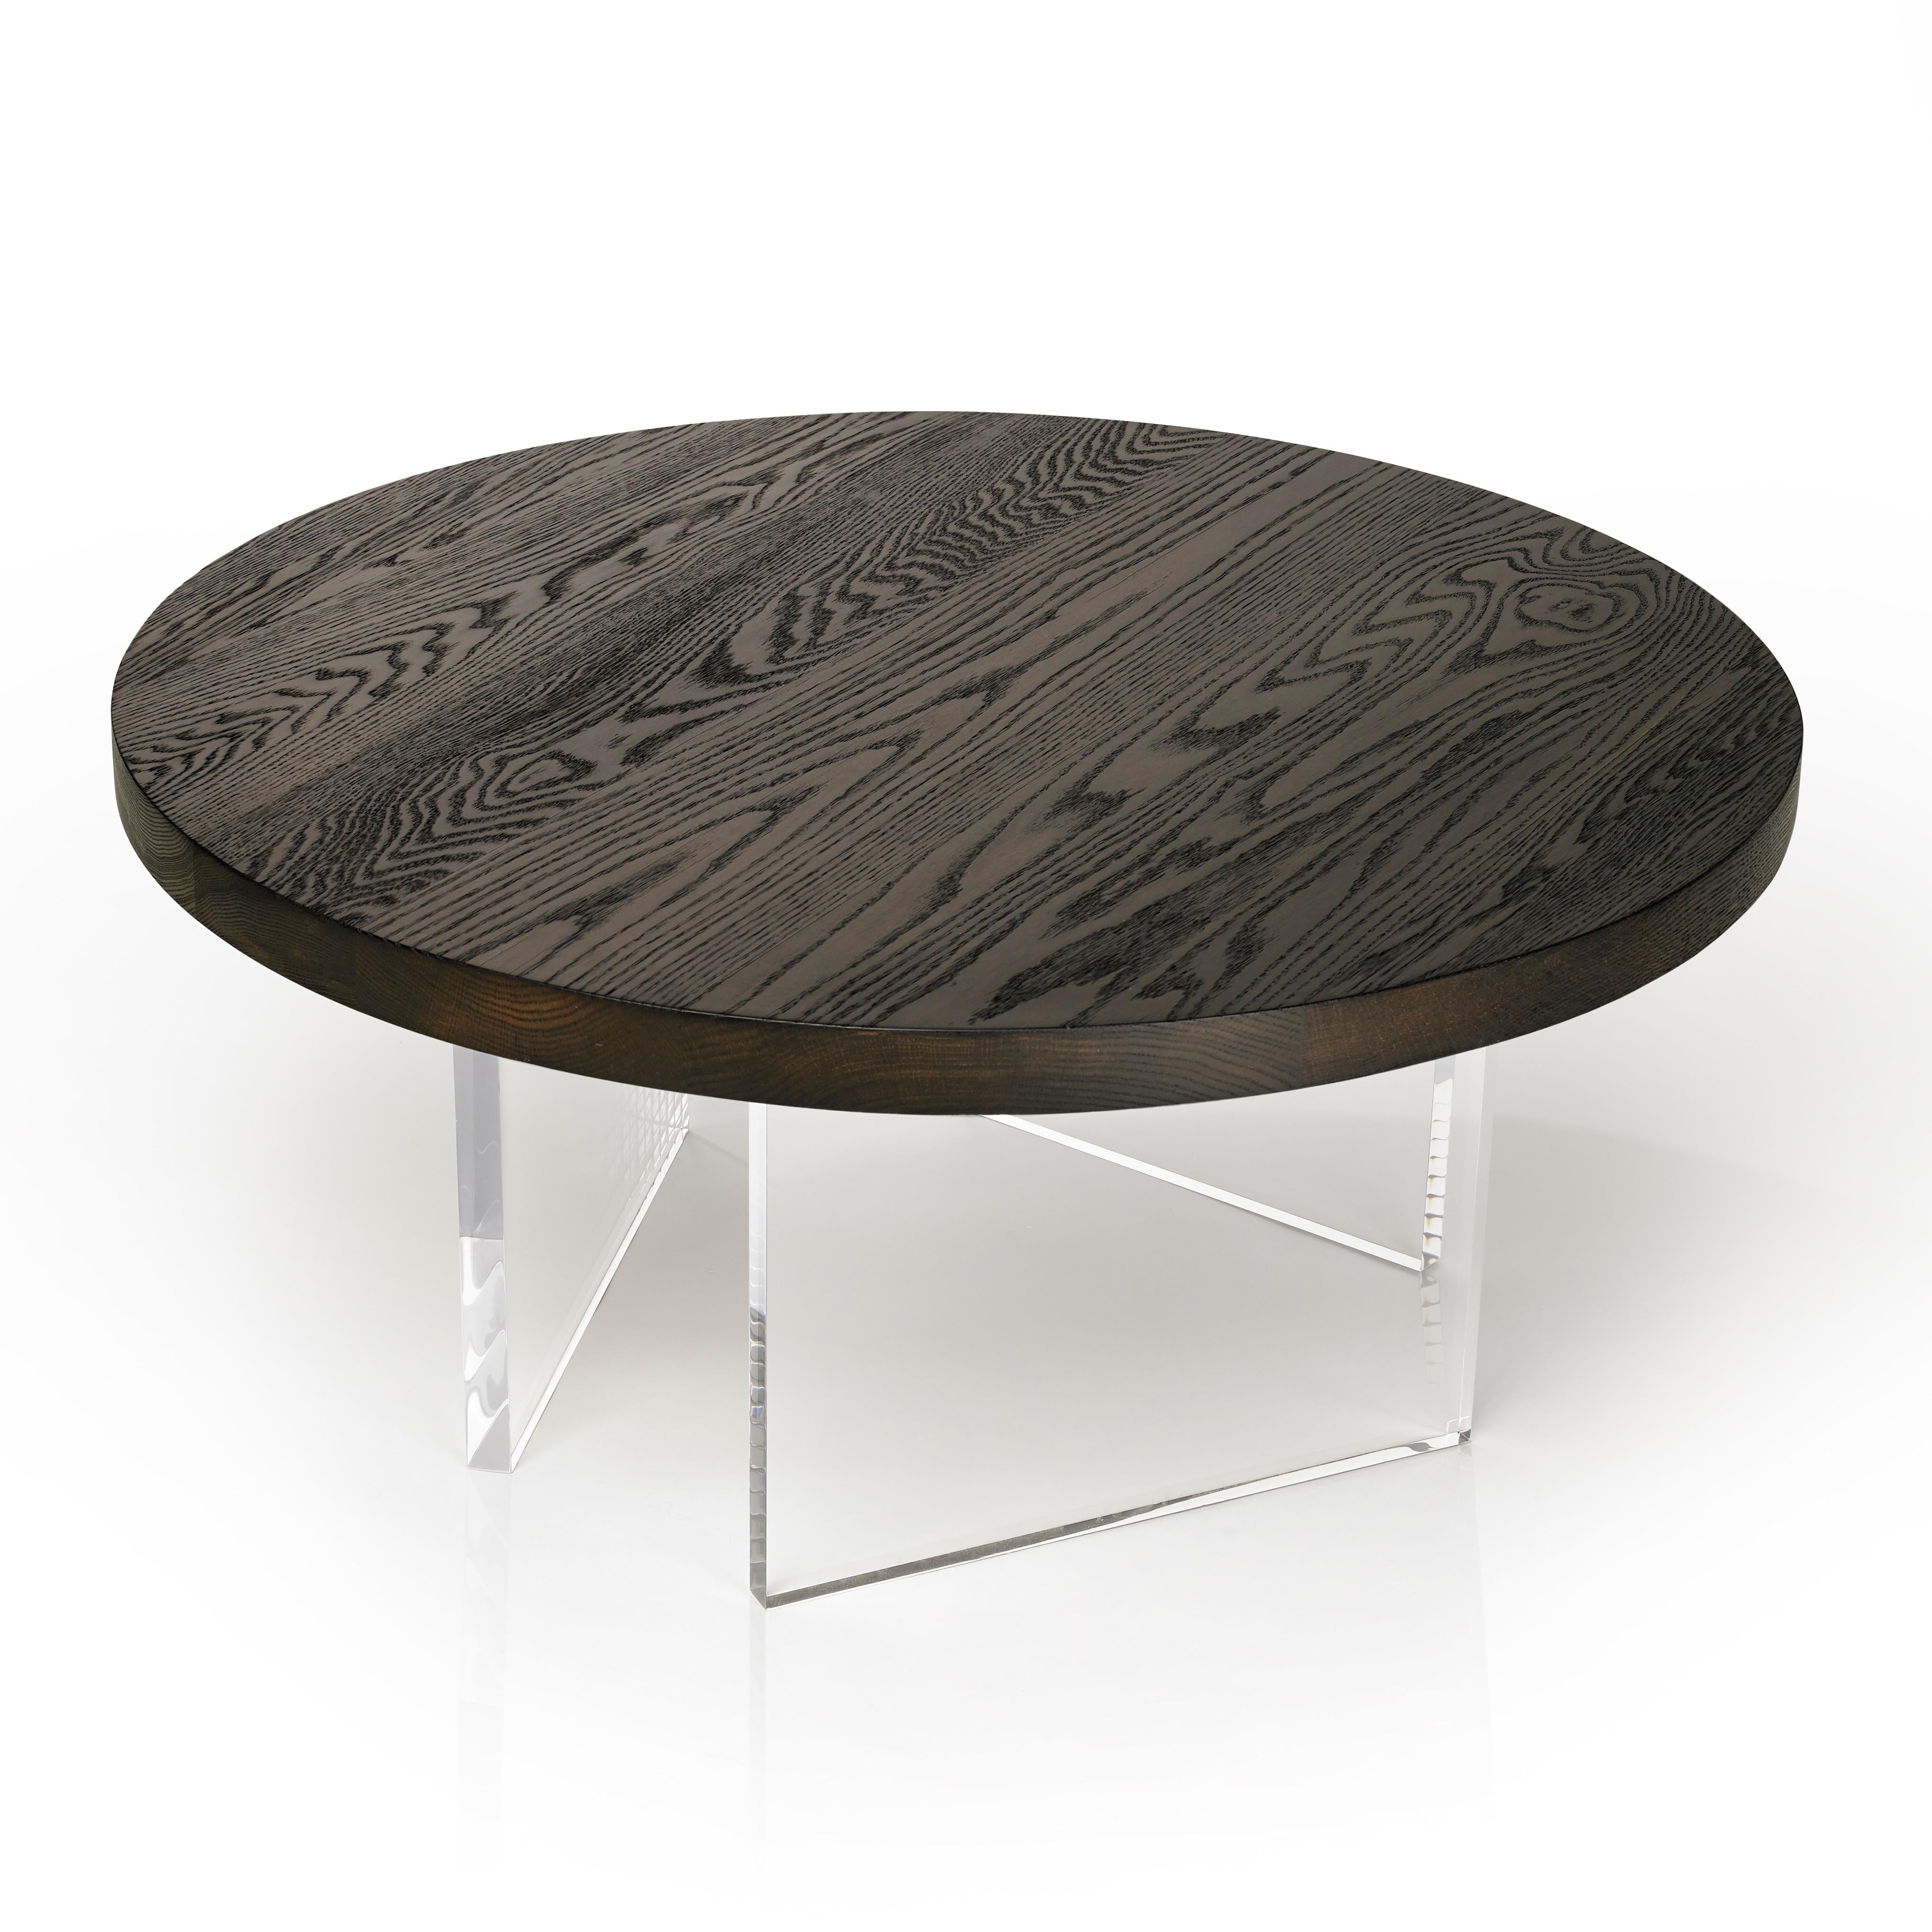 La table basse ronde raffinée Constantinople en chêne torréfié, selon la technique traditionnelle japonaise du shou-sugi-ban, apporte une touche sophistiquée à son espace. Le plateau repose sur trois pieds en acrylique d'un pouce d'épaisseur qui